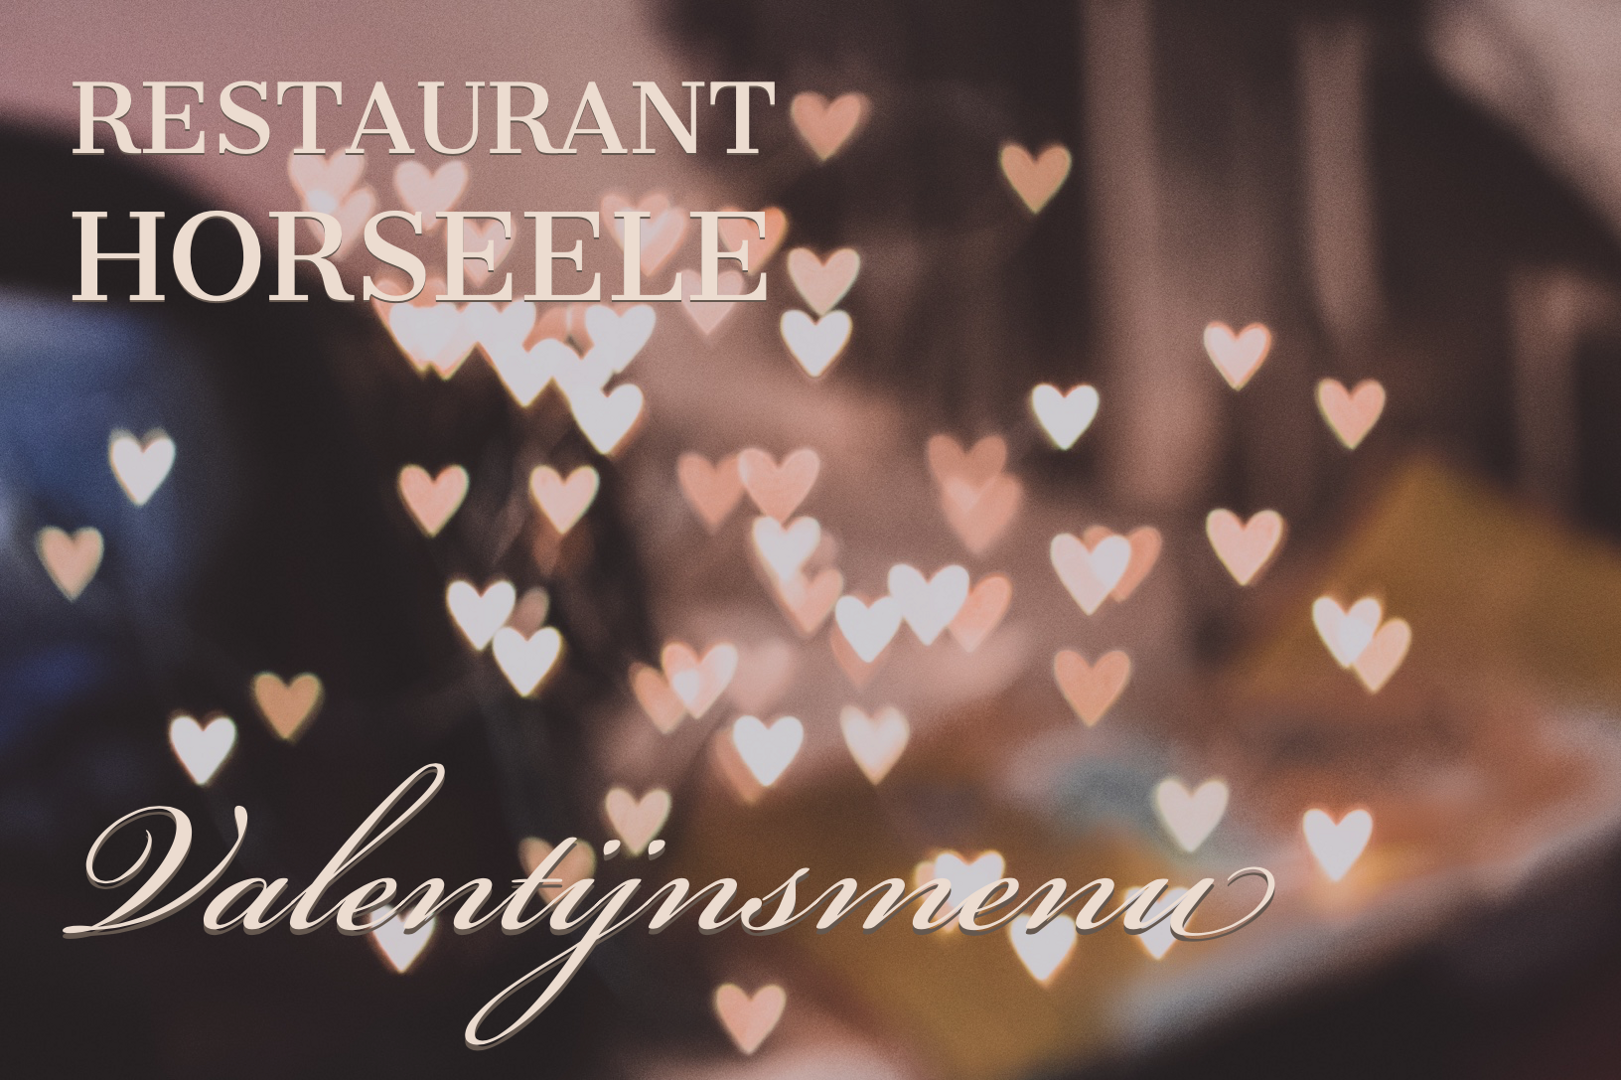 Valentijn bij Restaurant Horseele